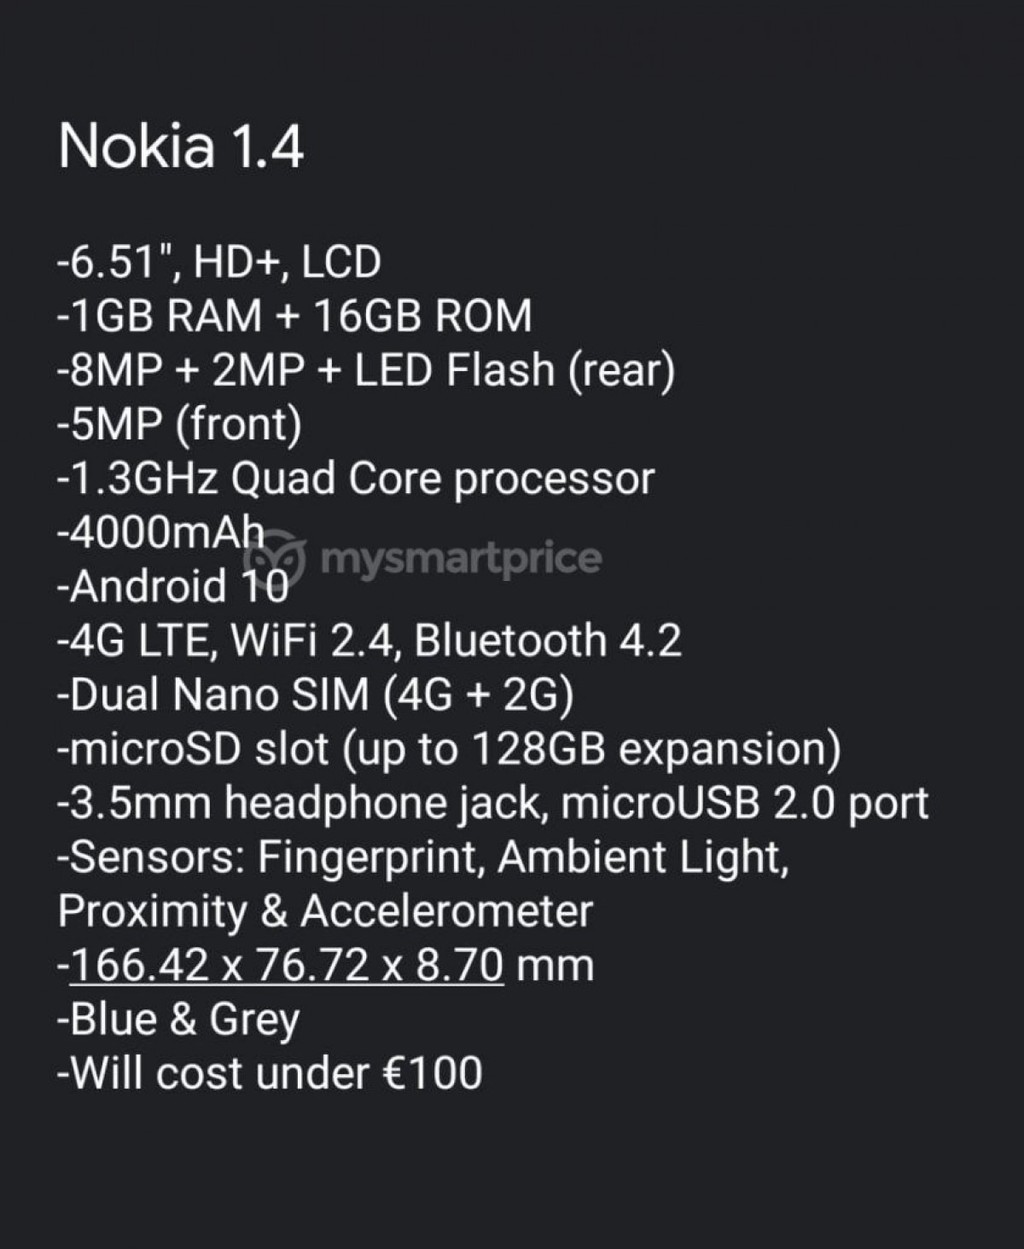 Nokia 1.4 lộ diện với thông số cơ bản đi kèm giá rẻ ? ảnh 1